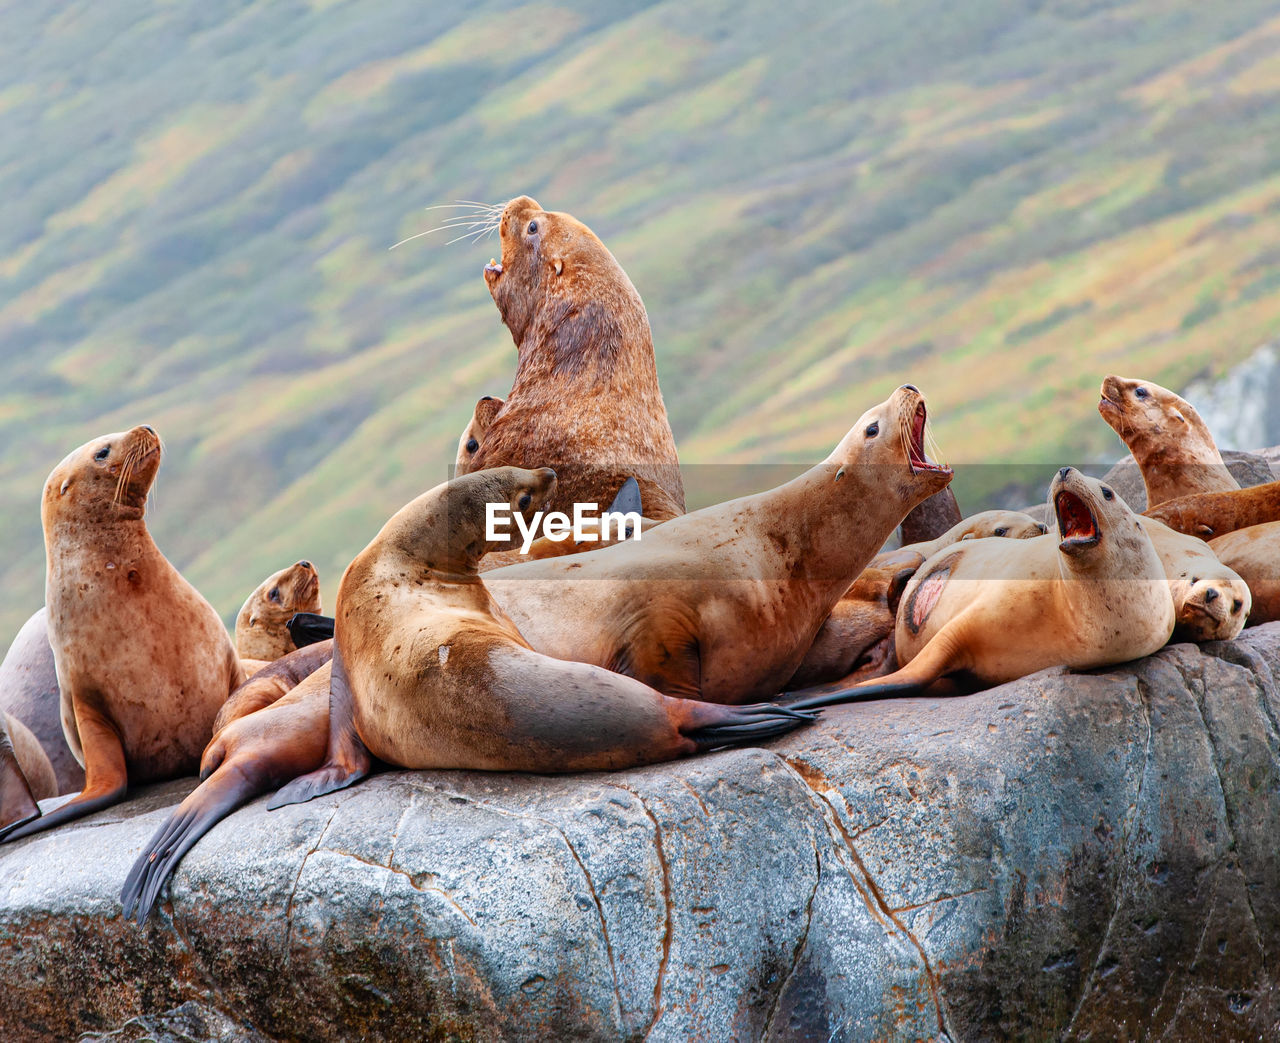 The steller sea lion eumetopias jubatus on rock in kamchatka peninsula